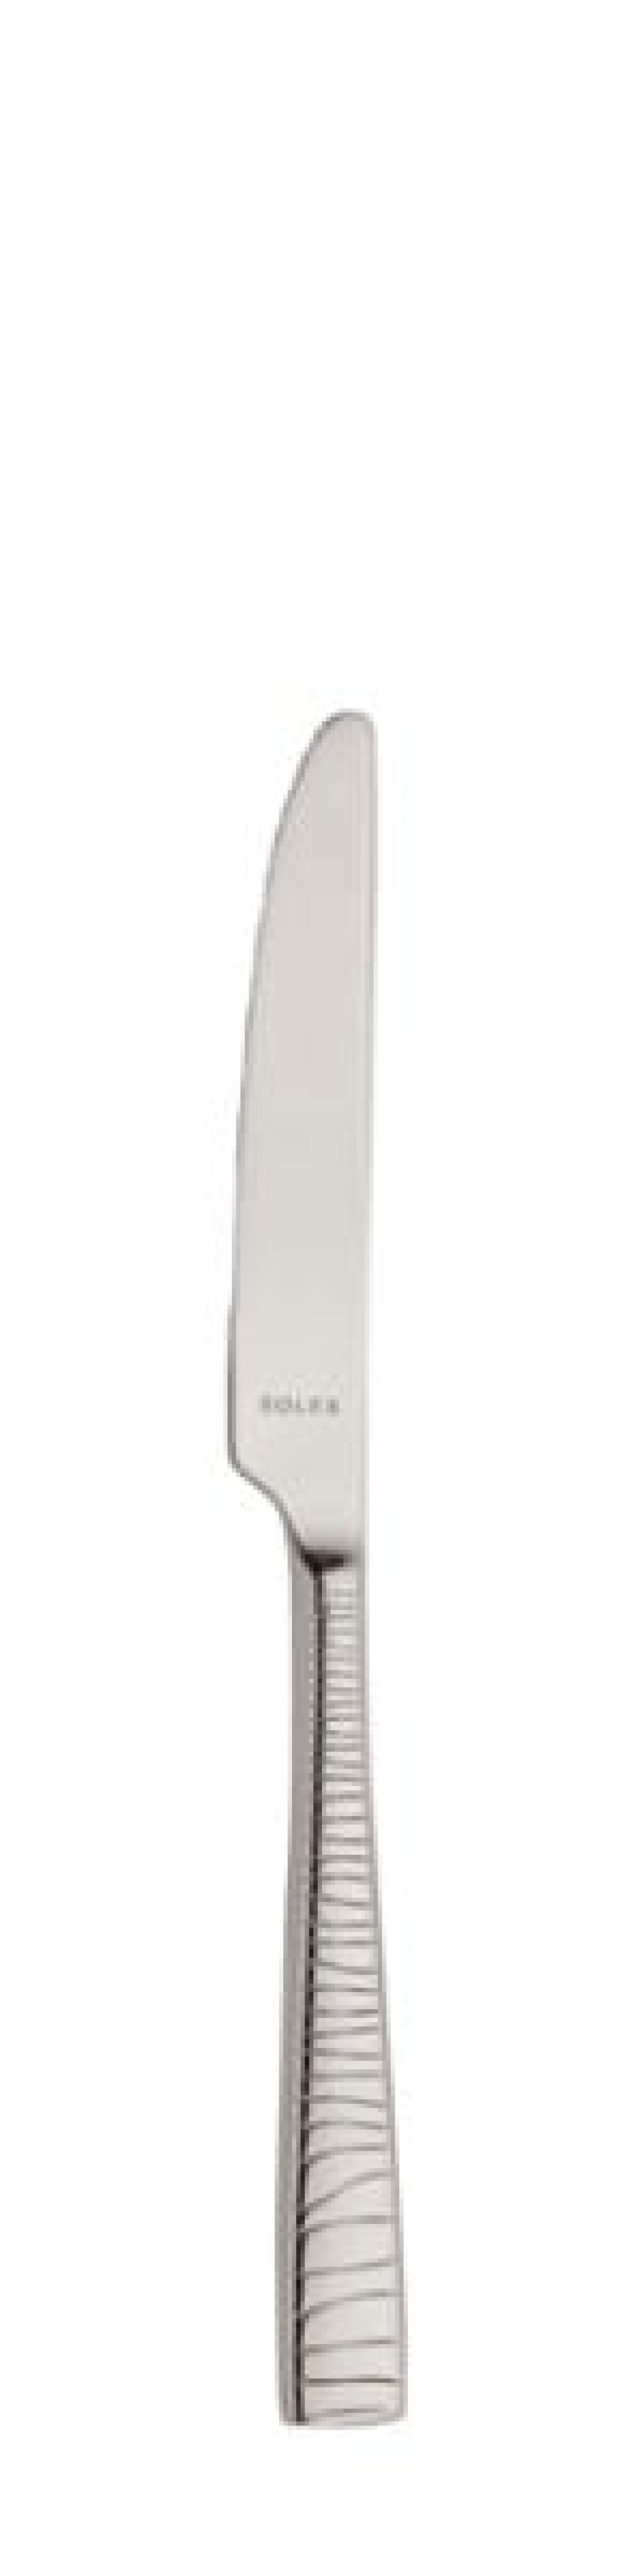 Nóż deserowy Alexa 213 mm - Solex w grupie Nakrycie stołu / Sztućce / Noże w The Kitchen Lab (1284-21676)